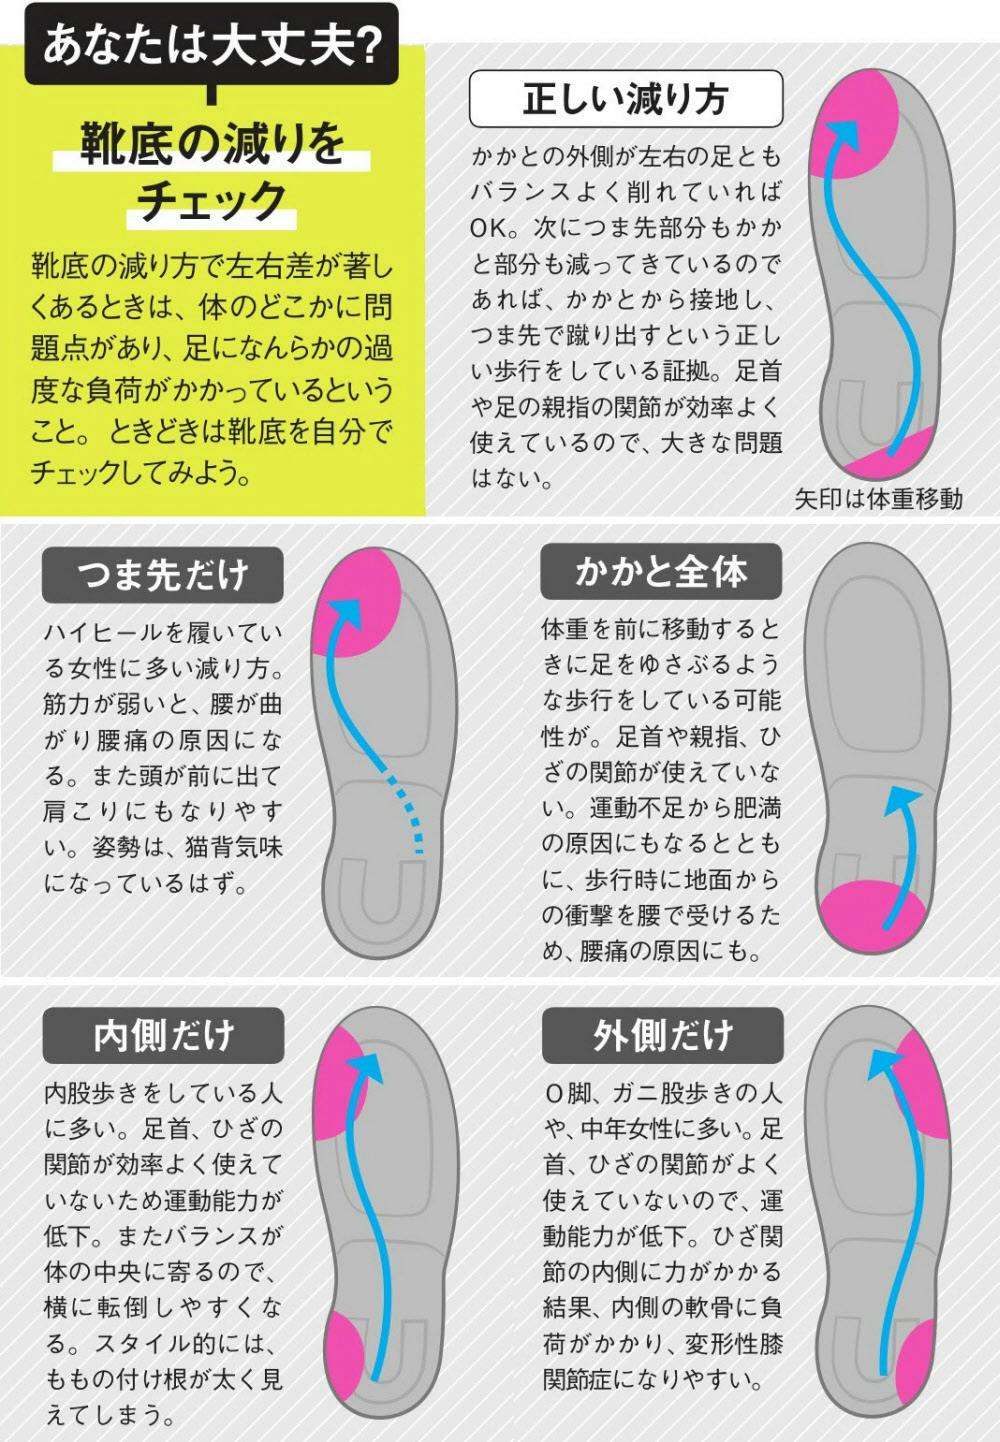 常に酷使されている我慢強い 足 に気づこう まず靴底の減りチェック 足が元気な Nikkei Style